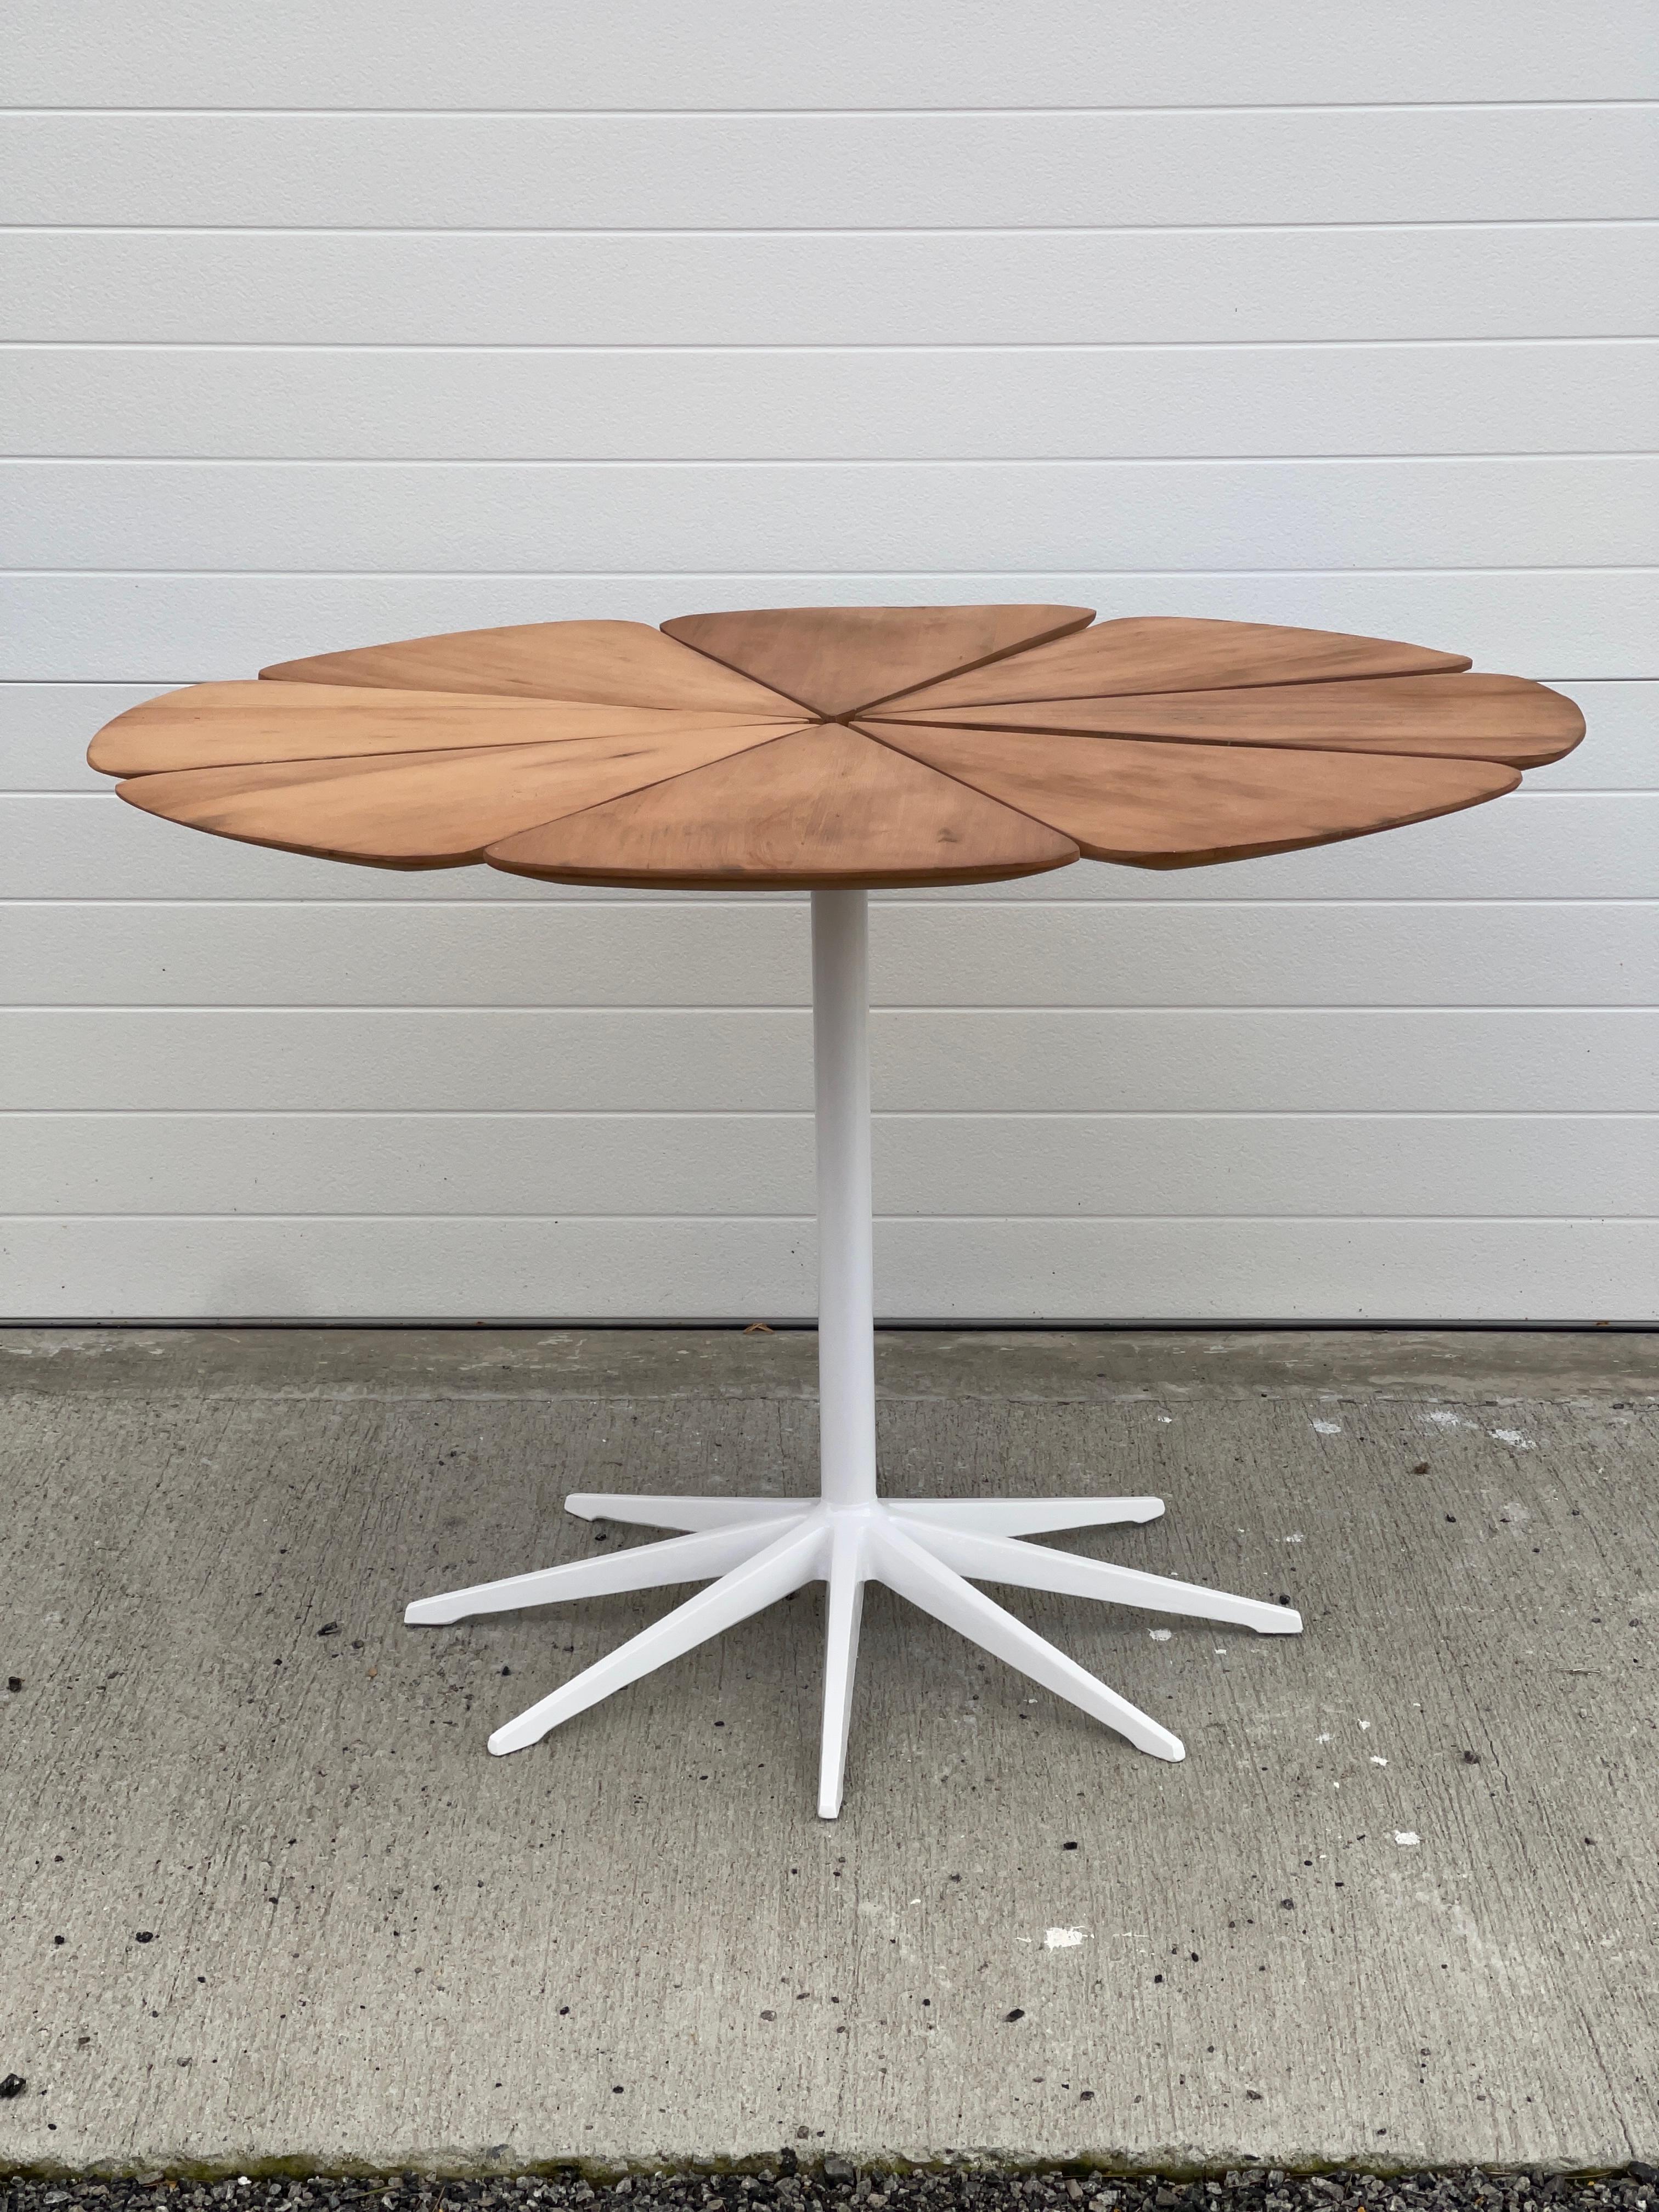 Dies ist eine der frühesten Ausgaben des Petal-Tisches, der von Richard Schultz entworfen und von Knoll um 1961 hergestellt wurde.
Er wurde von Knoll mit weiß gestrichenen Blattspitzen geliefert (siehe letztes Foto), aber das darunter liegende Holz